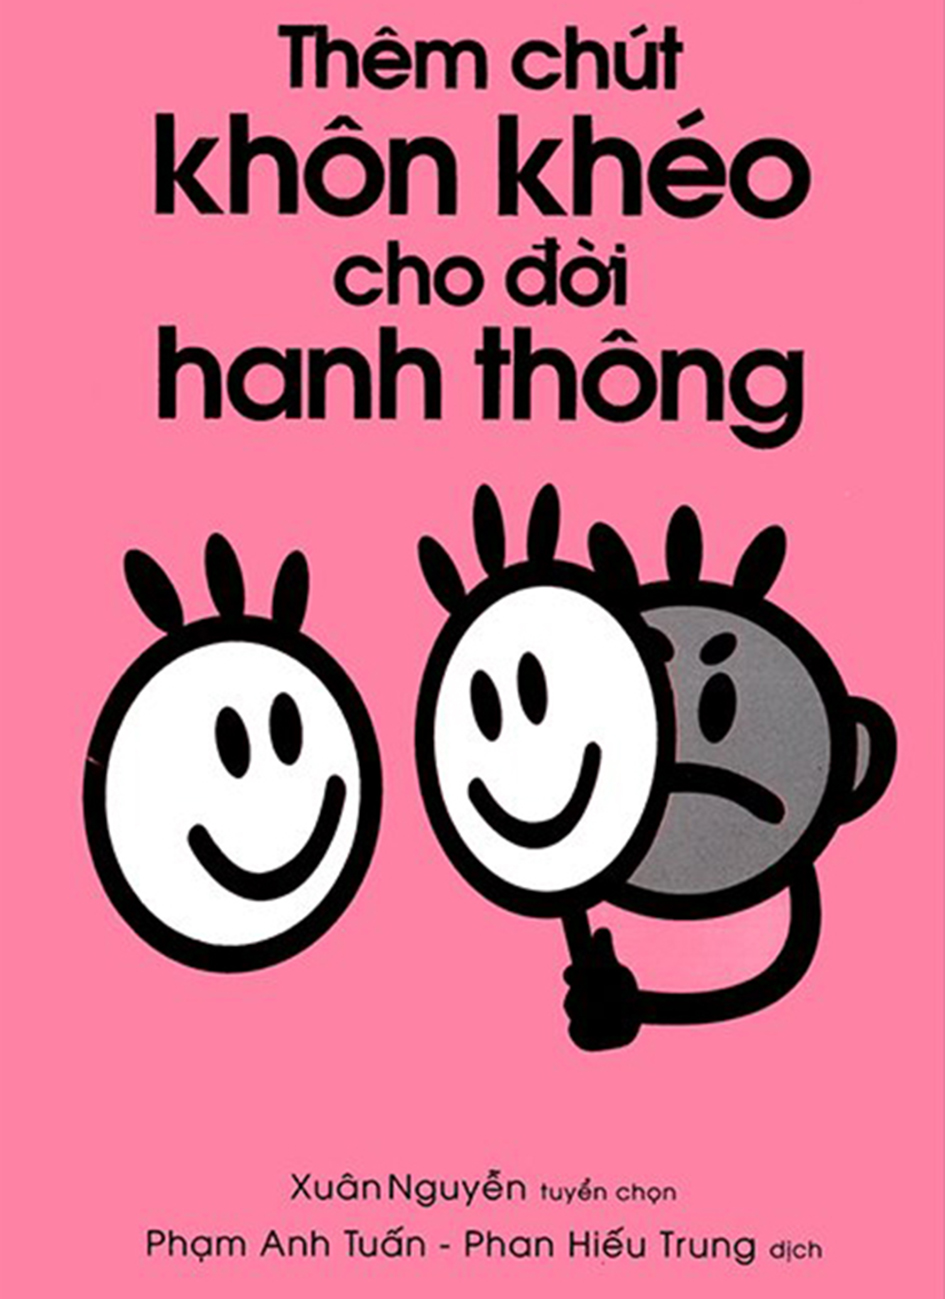 them chut khon kheo cho doi hanh thong